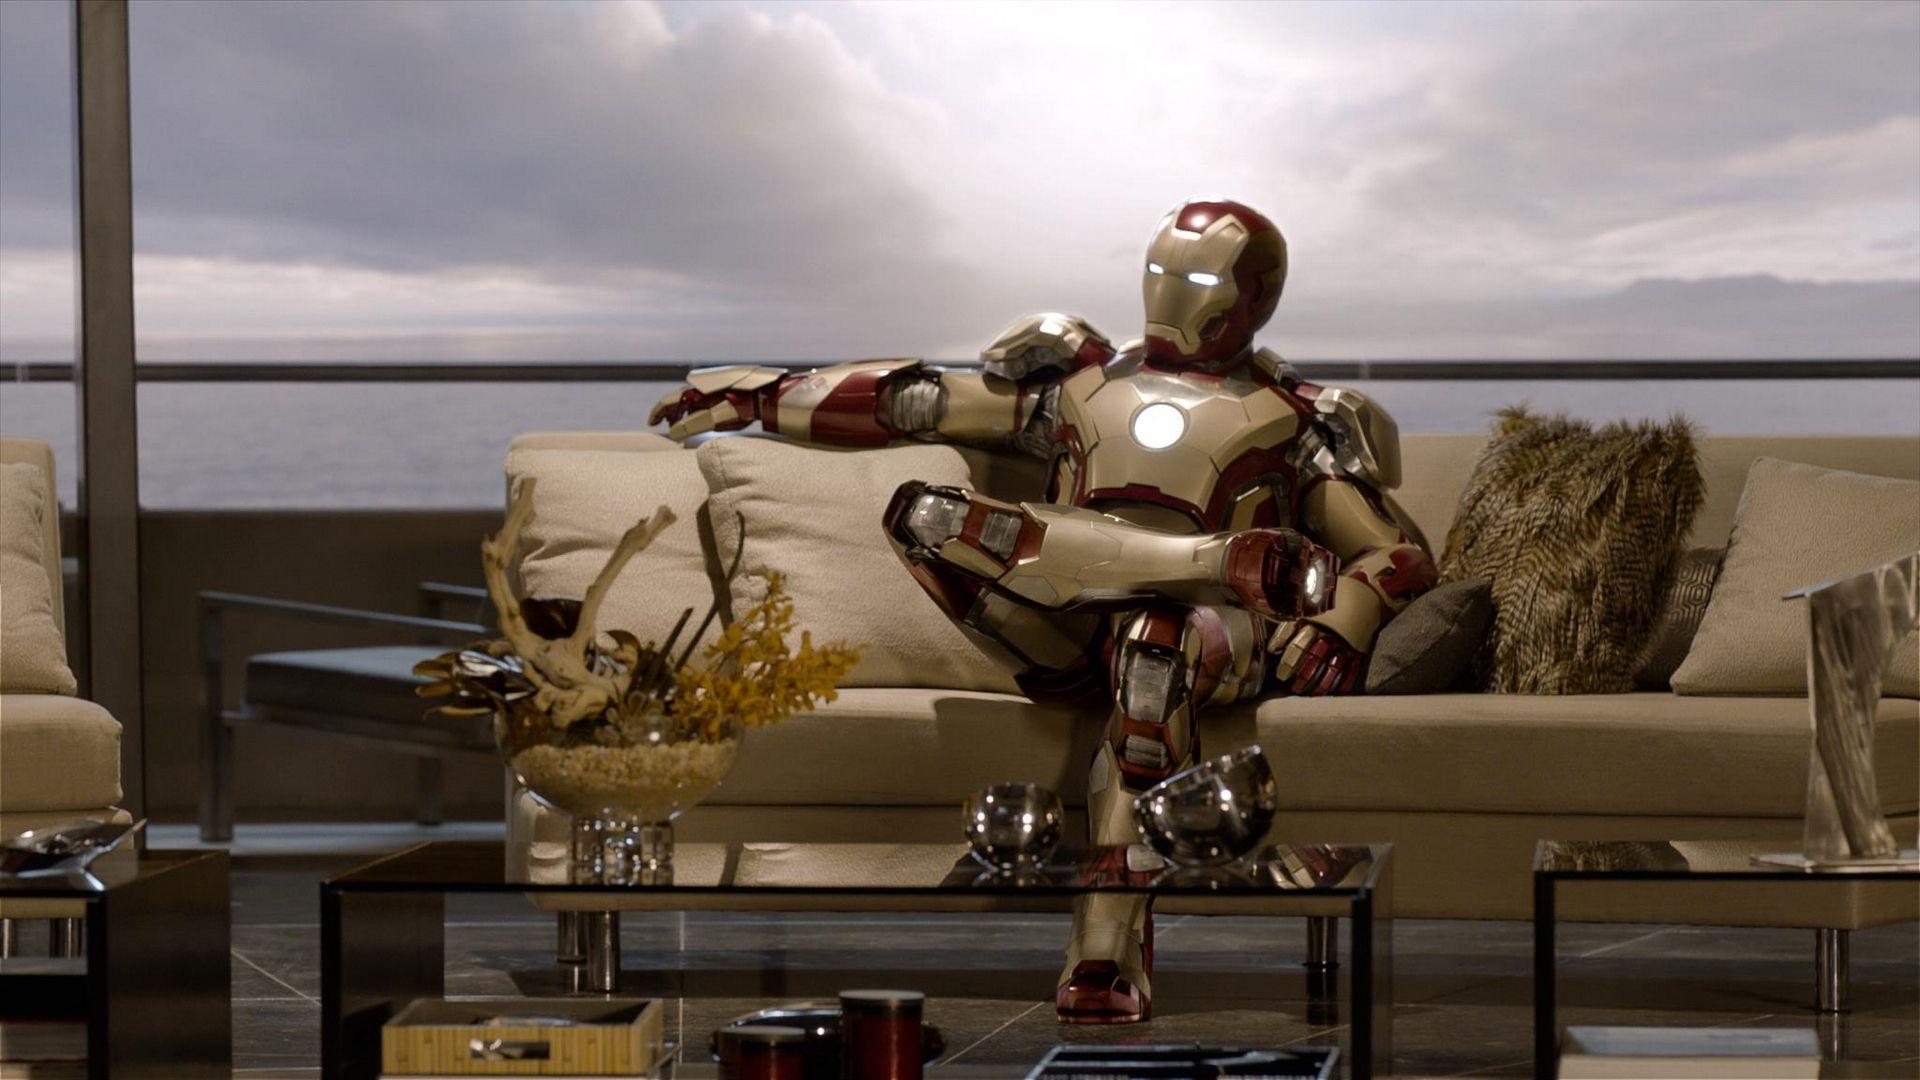 1920x1080 Iron Man 3 Movie hình nền